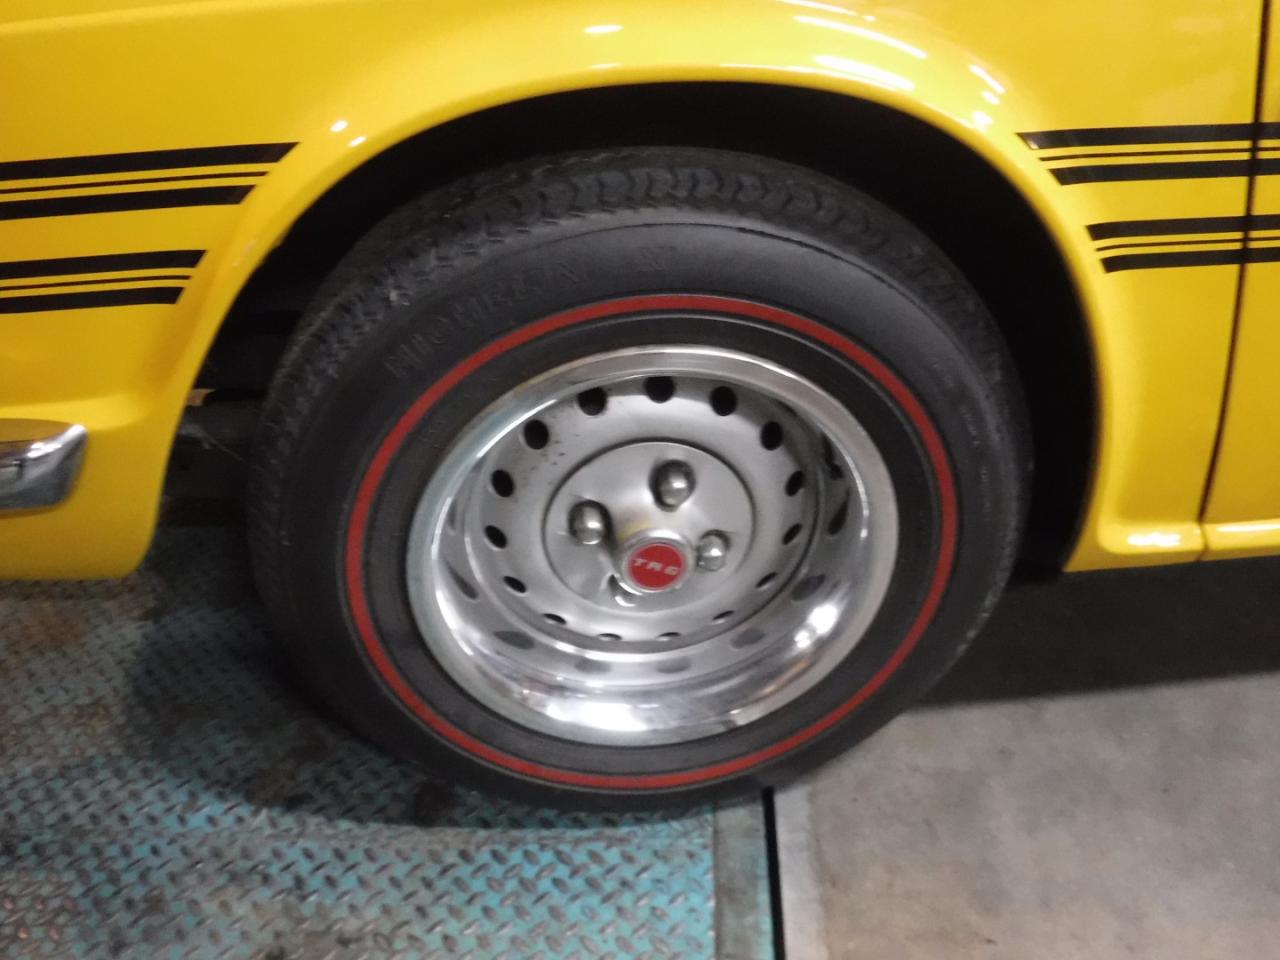 1976 Triumph TR6 yellow